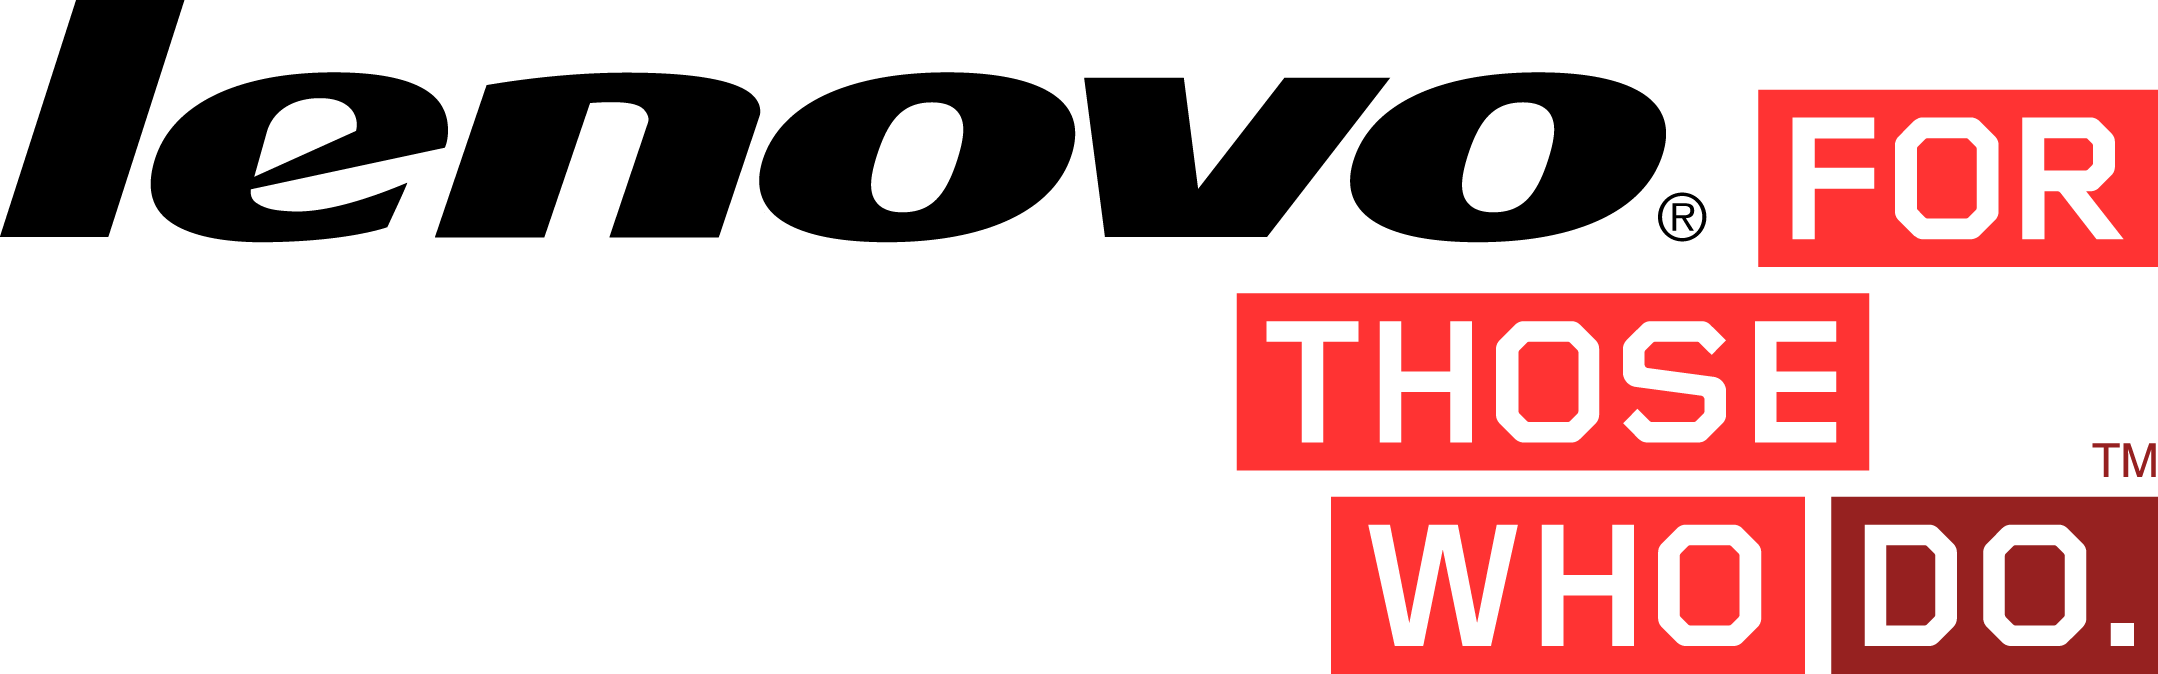 Lenovo Yoga Logo - Lenovo Official Logo - Tablet News